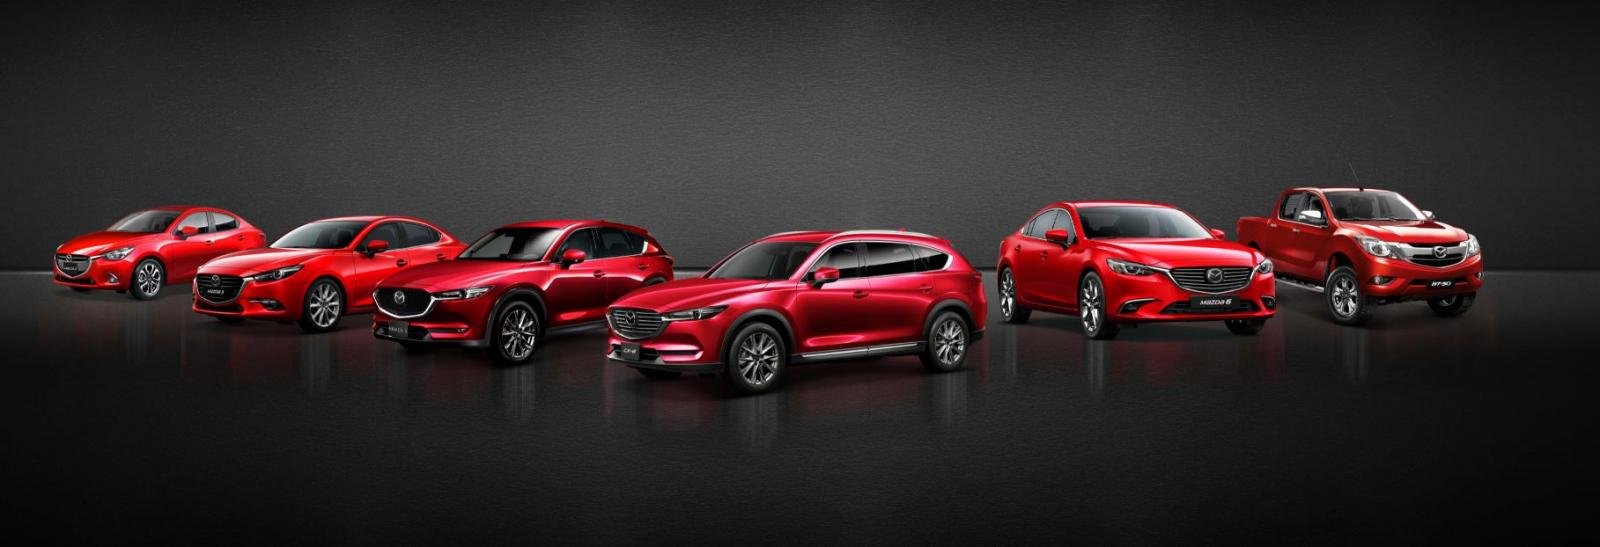 Thaco giảm giá đến hàng trăm triệu đồng cho xe Mazda trong tháng 10/2019 1a